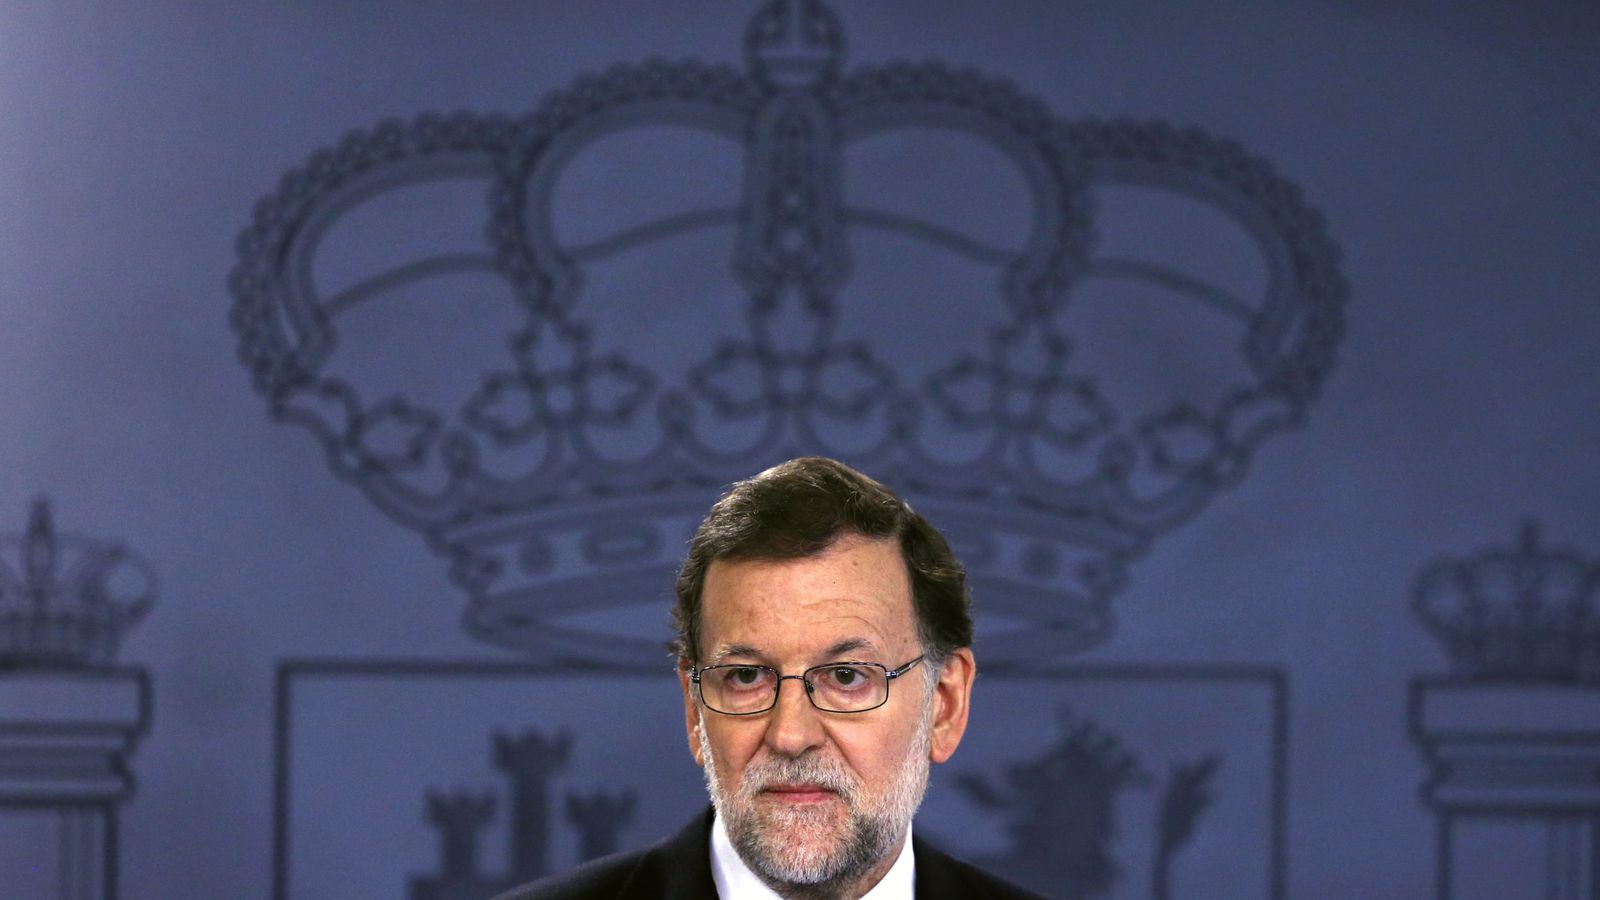 Foto: El presidente del Gobierno, Mariano Rajoy. (Reuters)